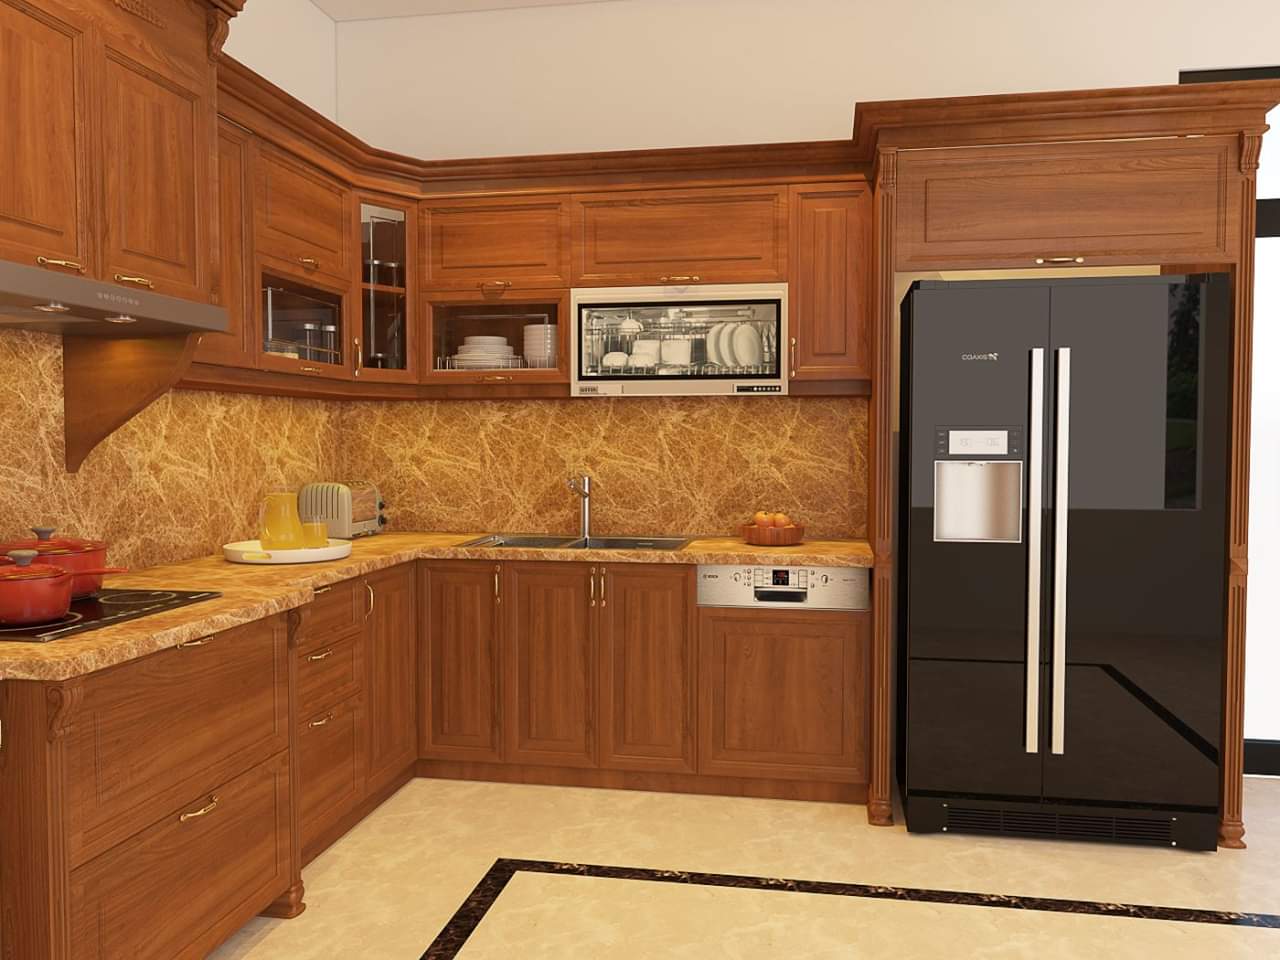 Tủ bếp gỗ Gõ đỏ là lựa chọn không thể bỏ qua cho những tín đồ của phong cách thiết kế đơn giản và tinh tế. Với chất liệu gỗ gõ đỏ tự nhiên và độ bền cao, tủ bếp này mang đến không gian bếp của bạn vẻ đẹp sang trọng và sang trọng. Hãy xem hình ảnh liên quan để khám phá thêm về sản phẩm này.